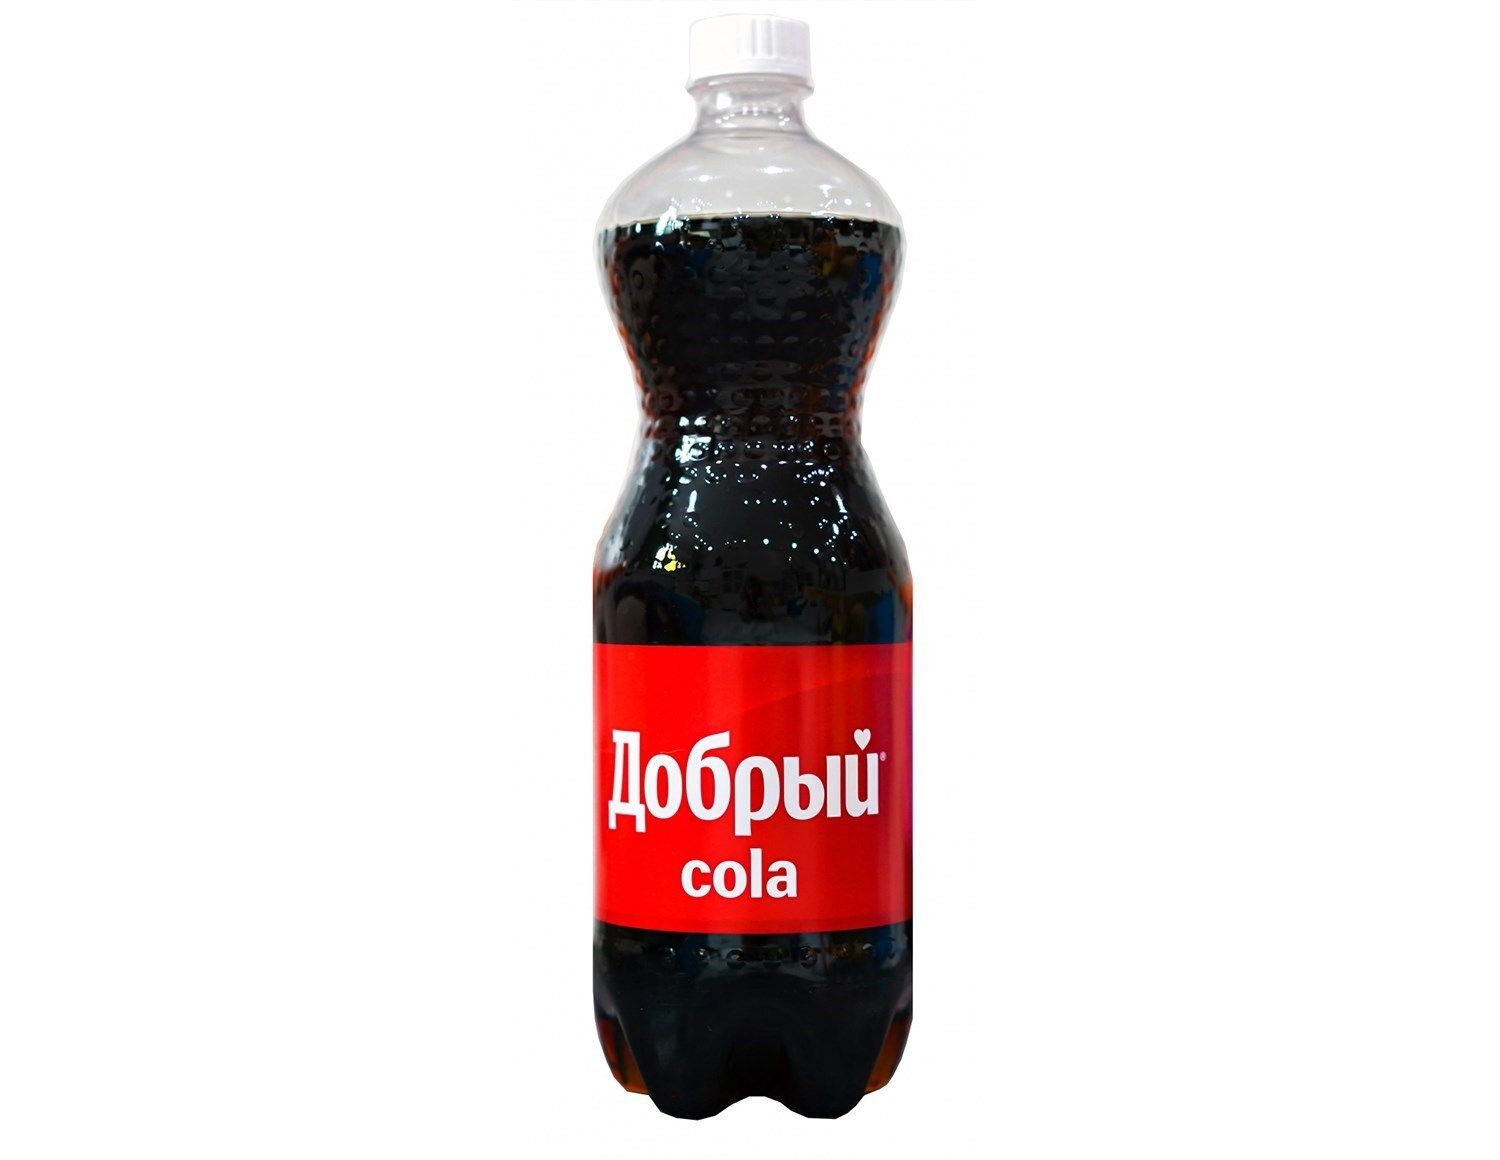 Coca Cola 1 литр